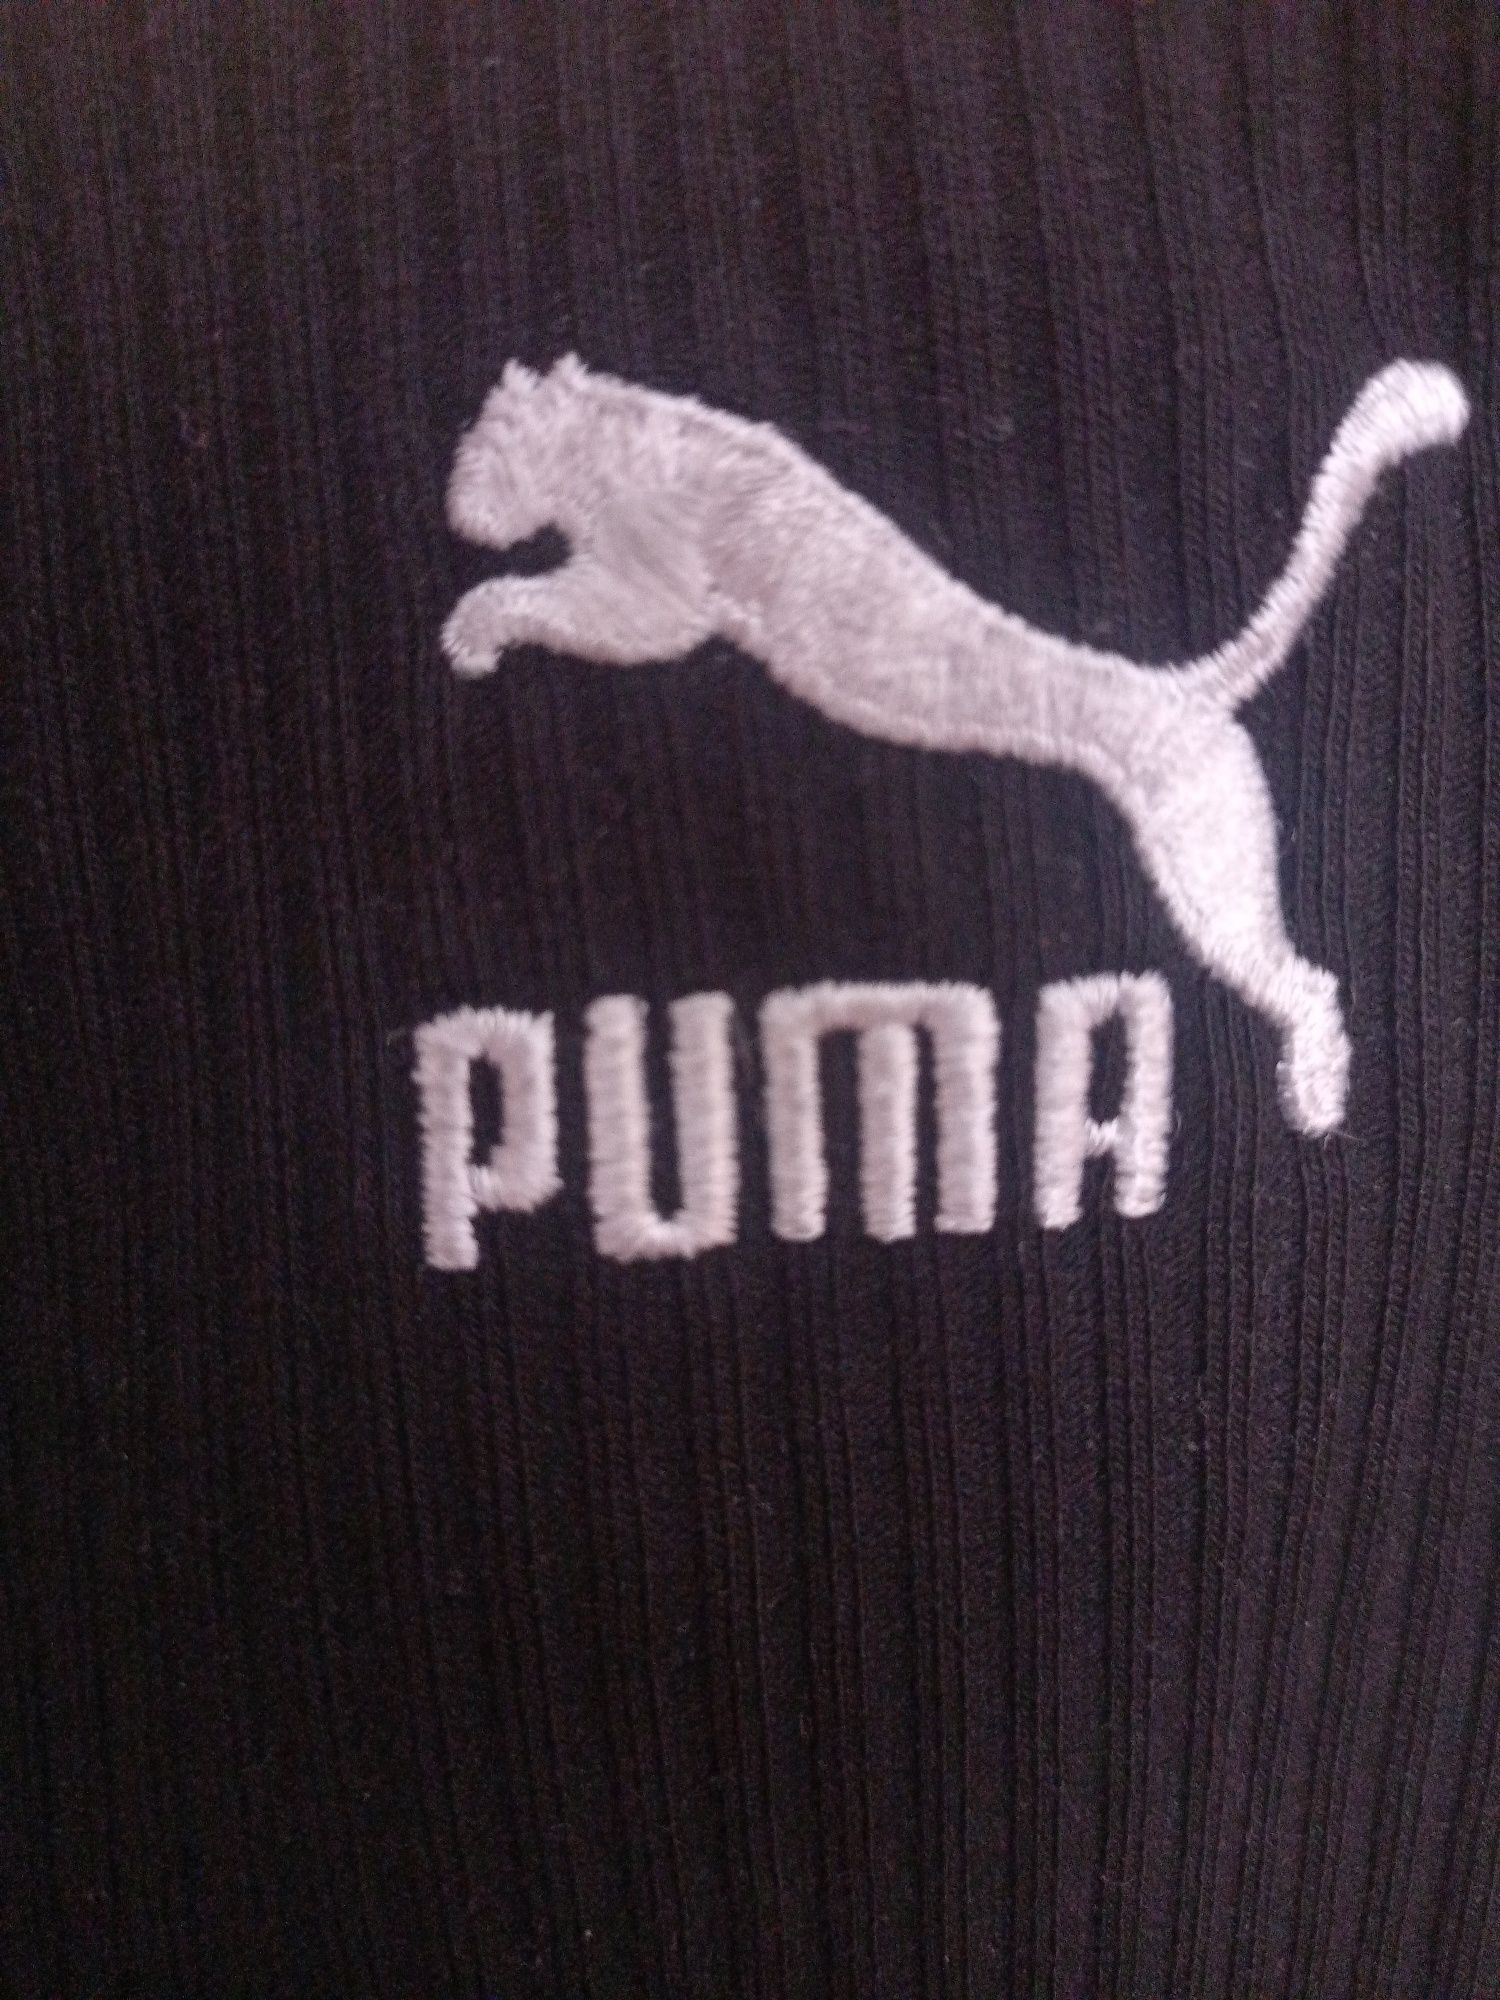 Трендовая юбка Puma миди саронг эксклюзив размер M/L